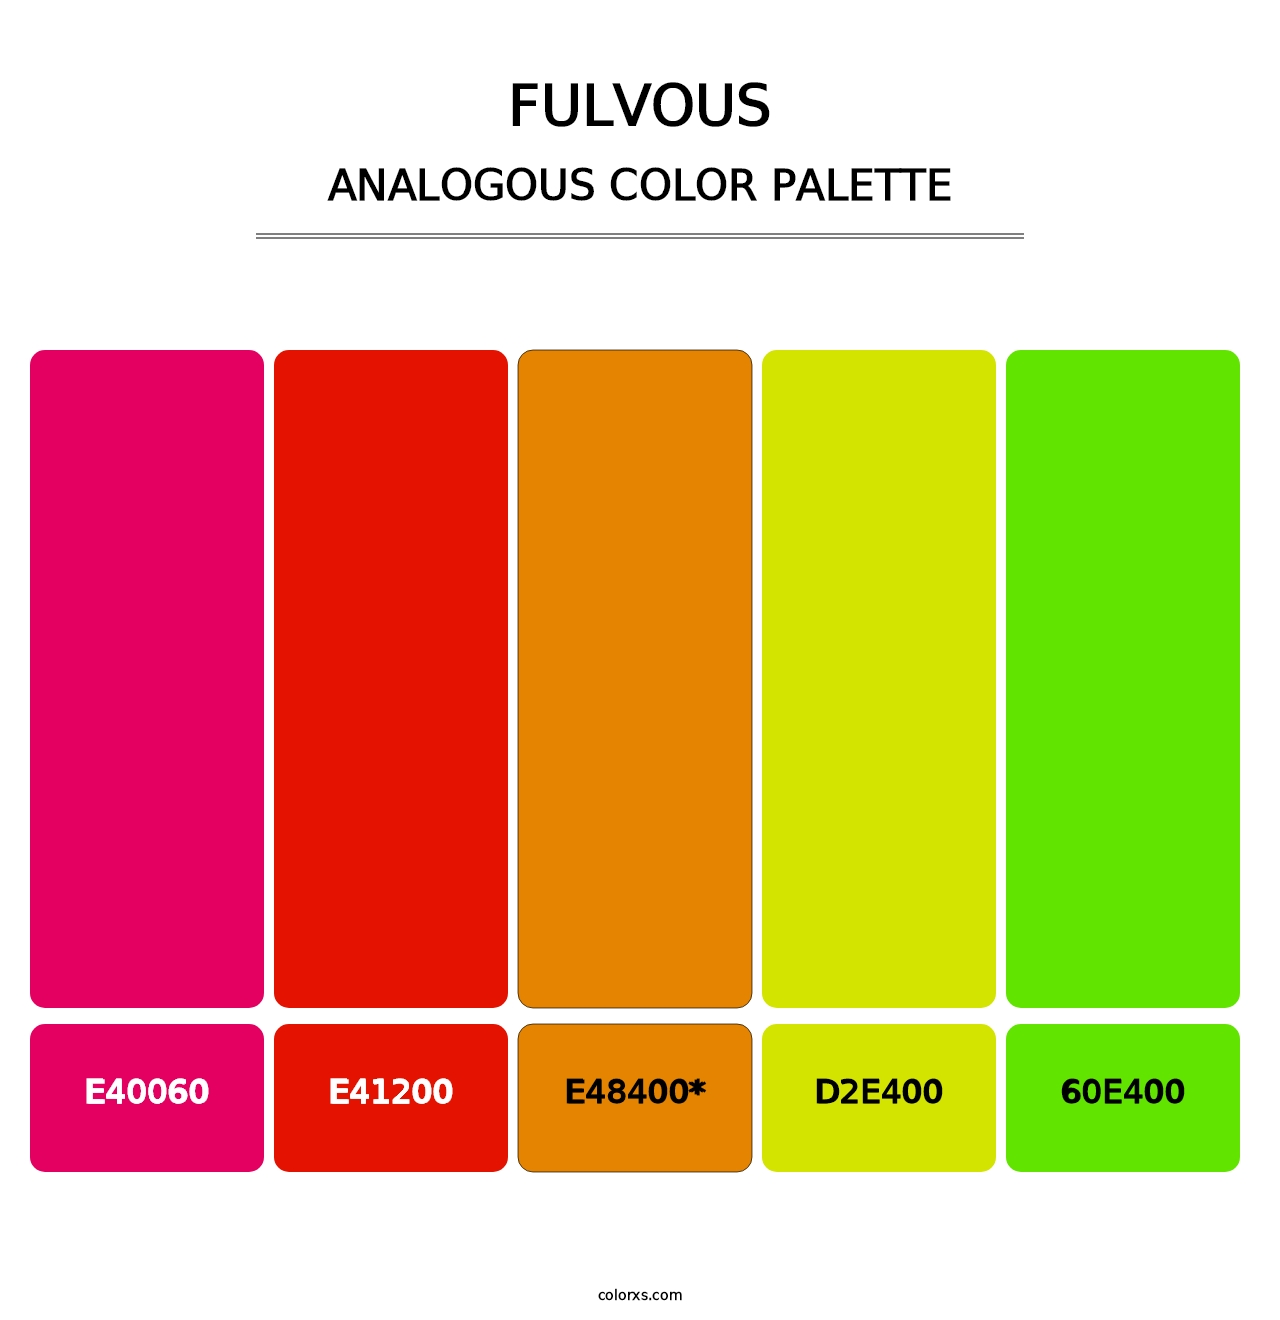 Fulvous - Analogous Color Palette